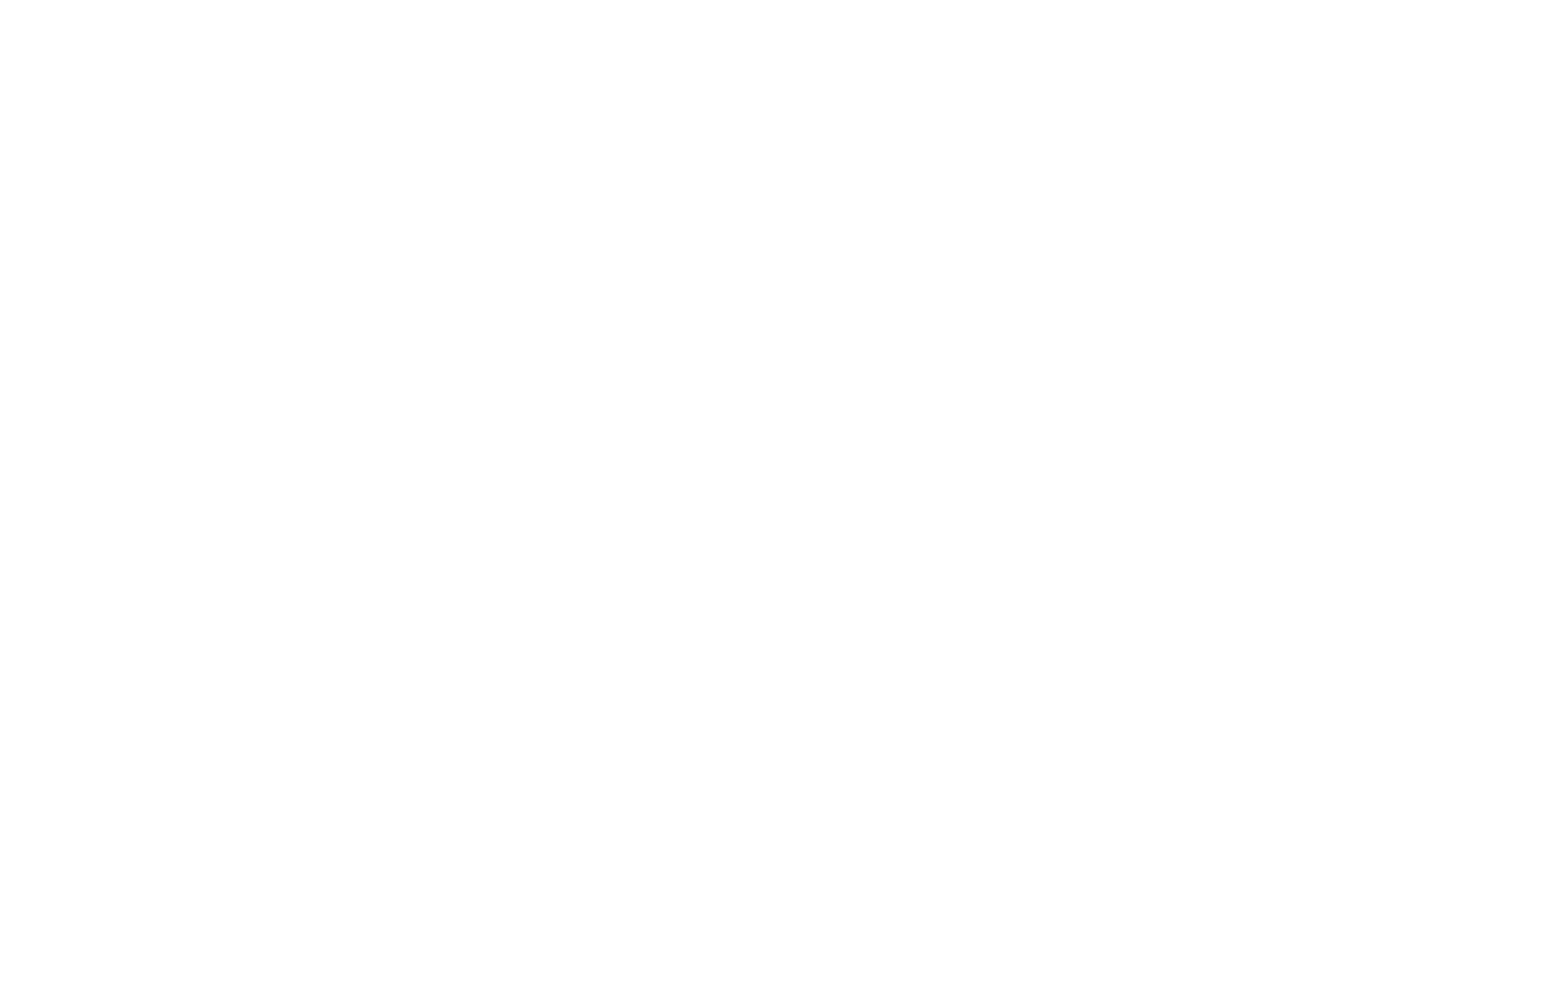 Брендирование логотипом - Брендбук производителя тюбингов Baboom